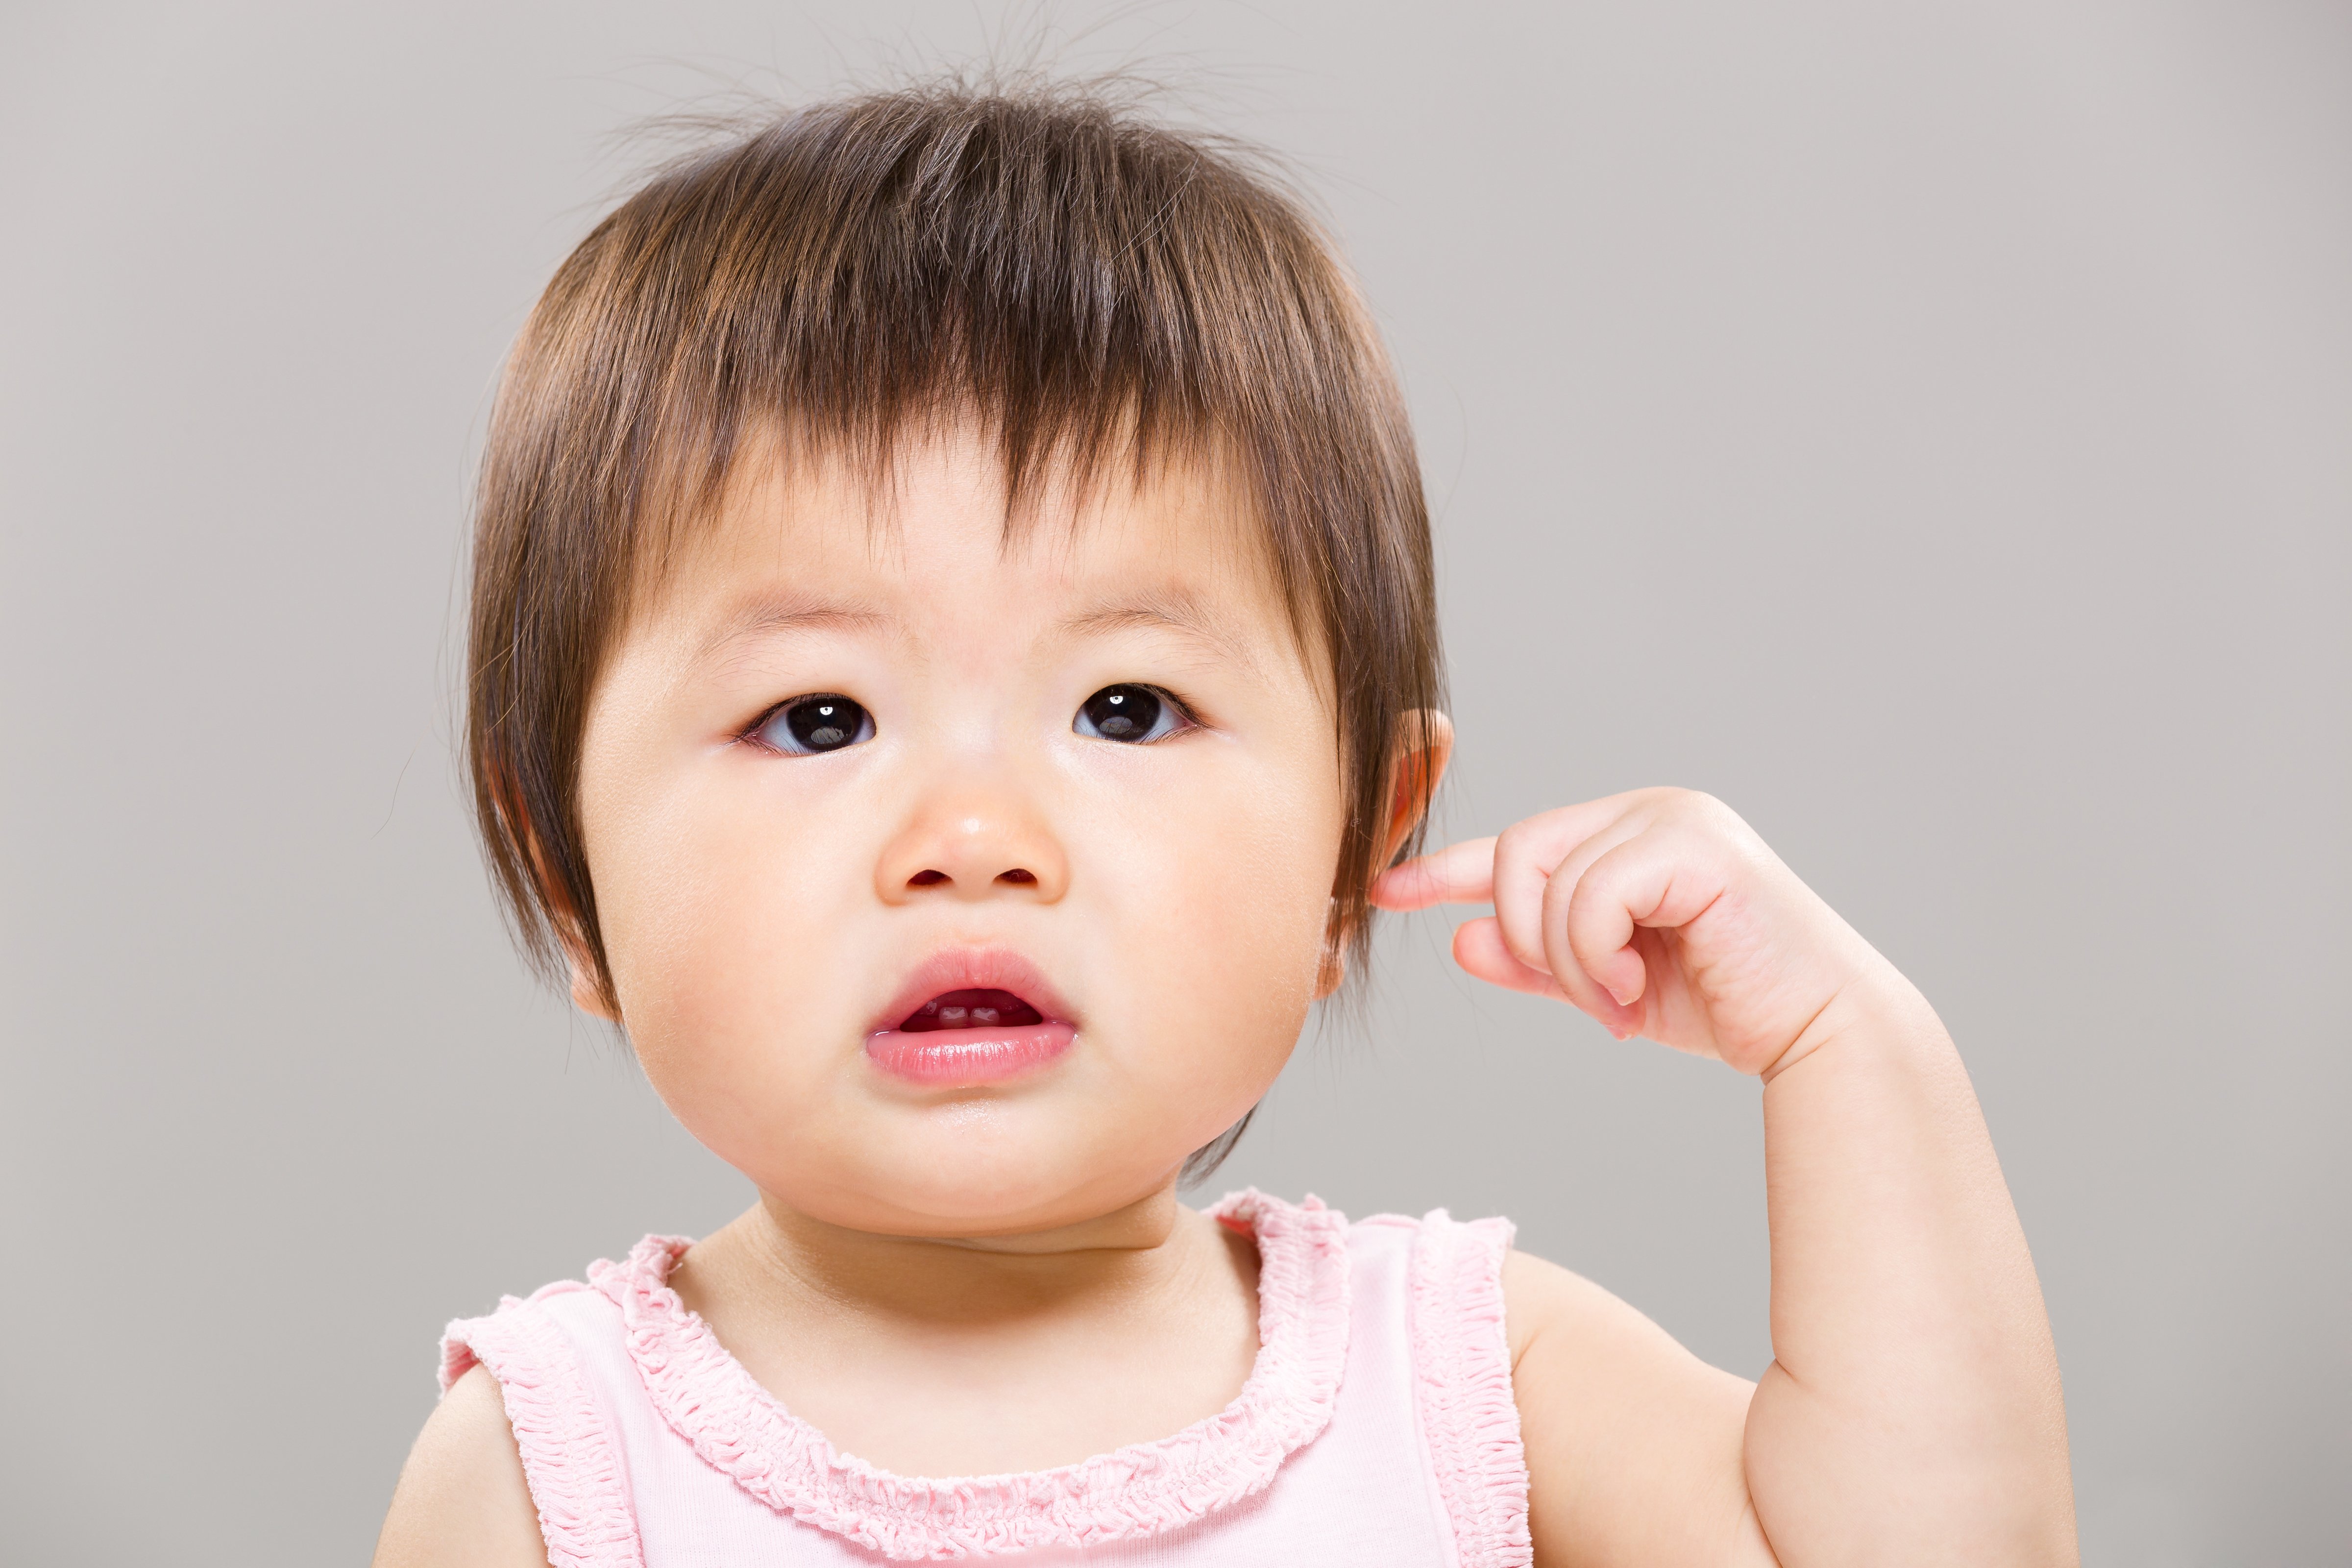 Bebita señalando su oreja. | Foto: Shutterstock